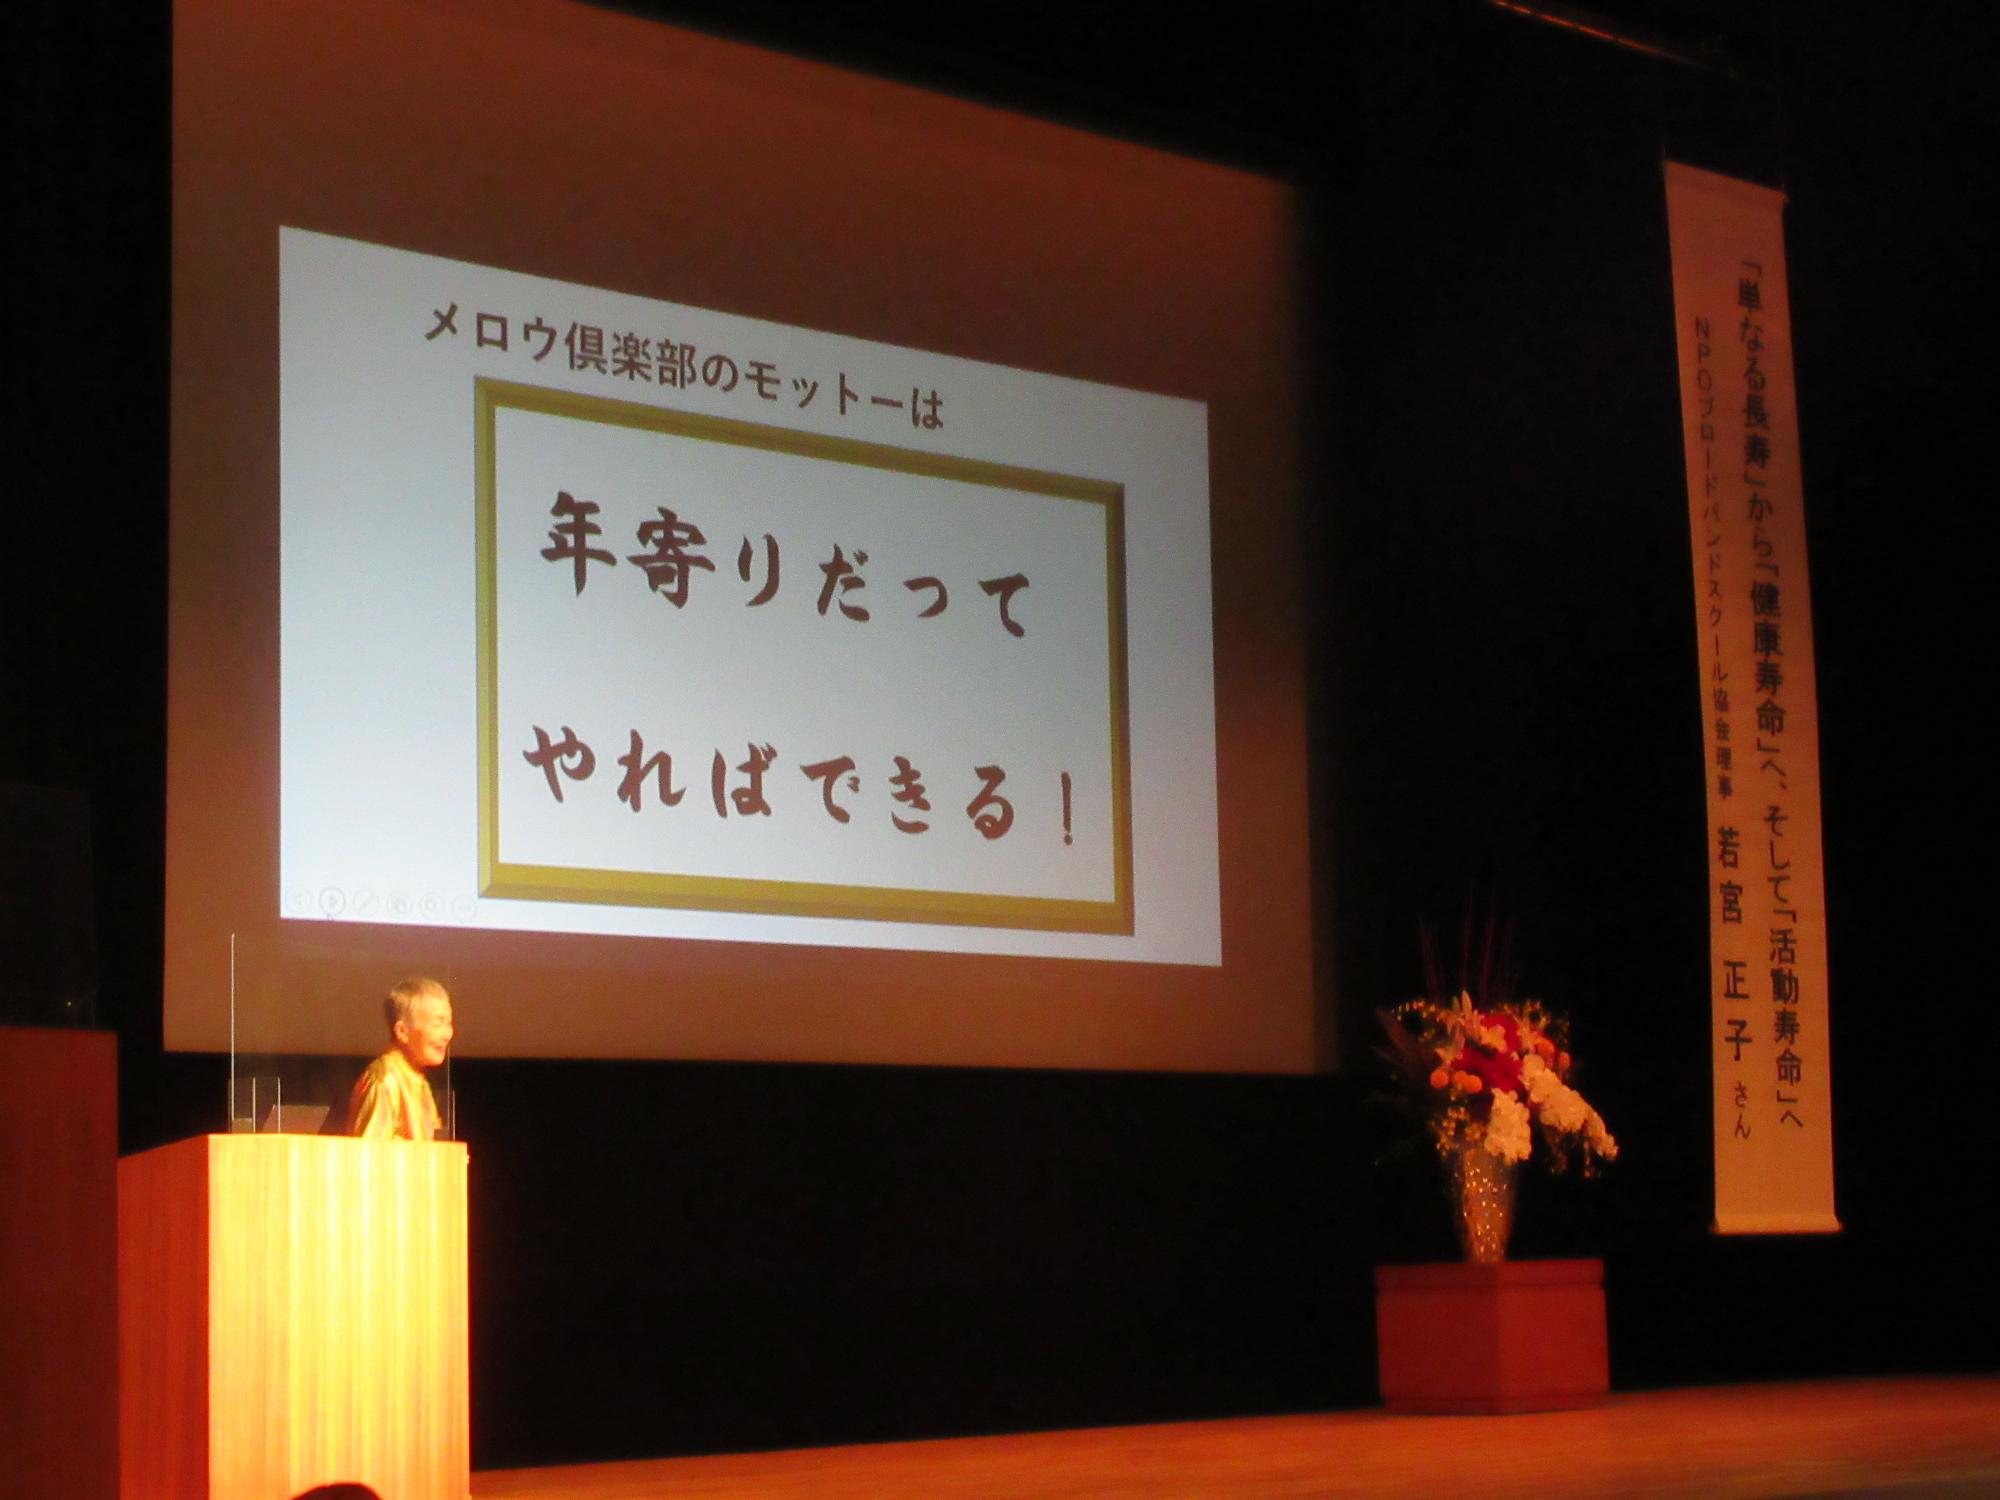 やまさき文化大学50周年記念講演で講演する講師の若宮正子先生の写真